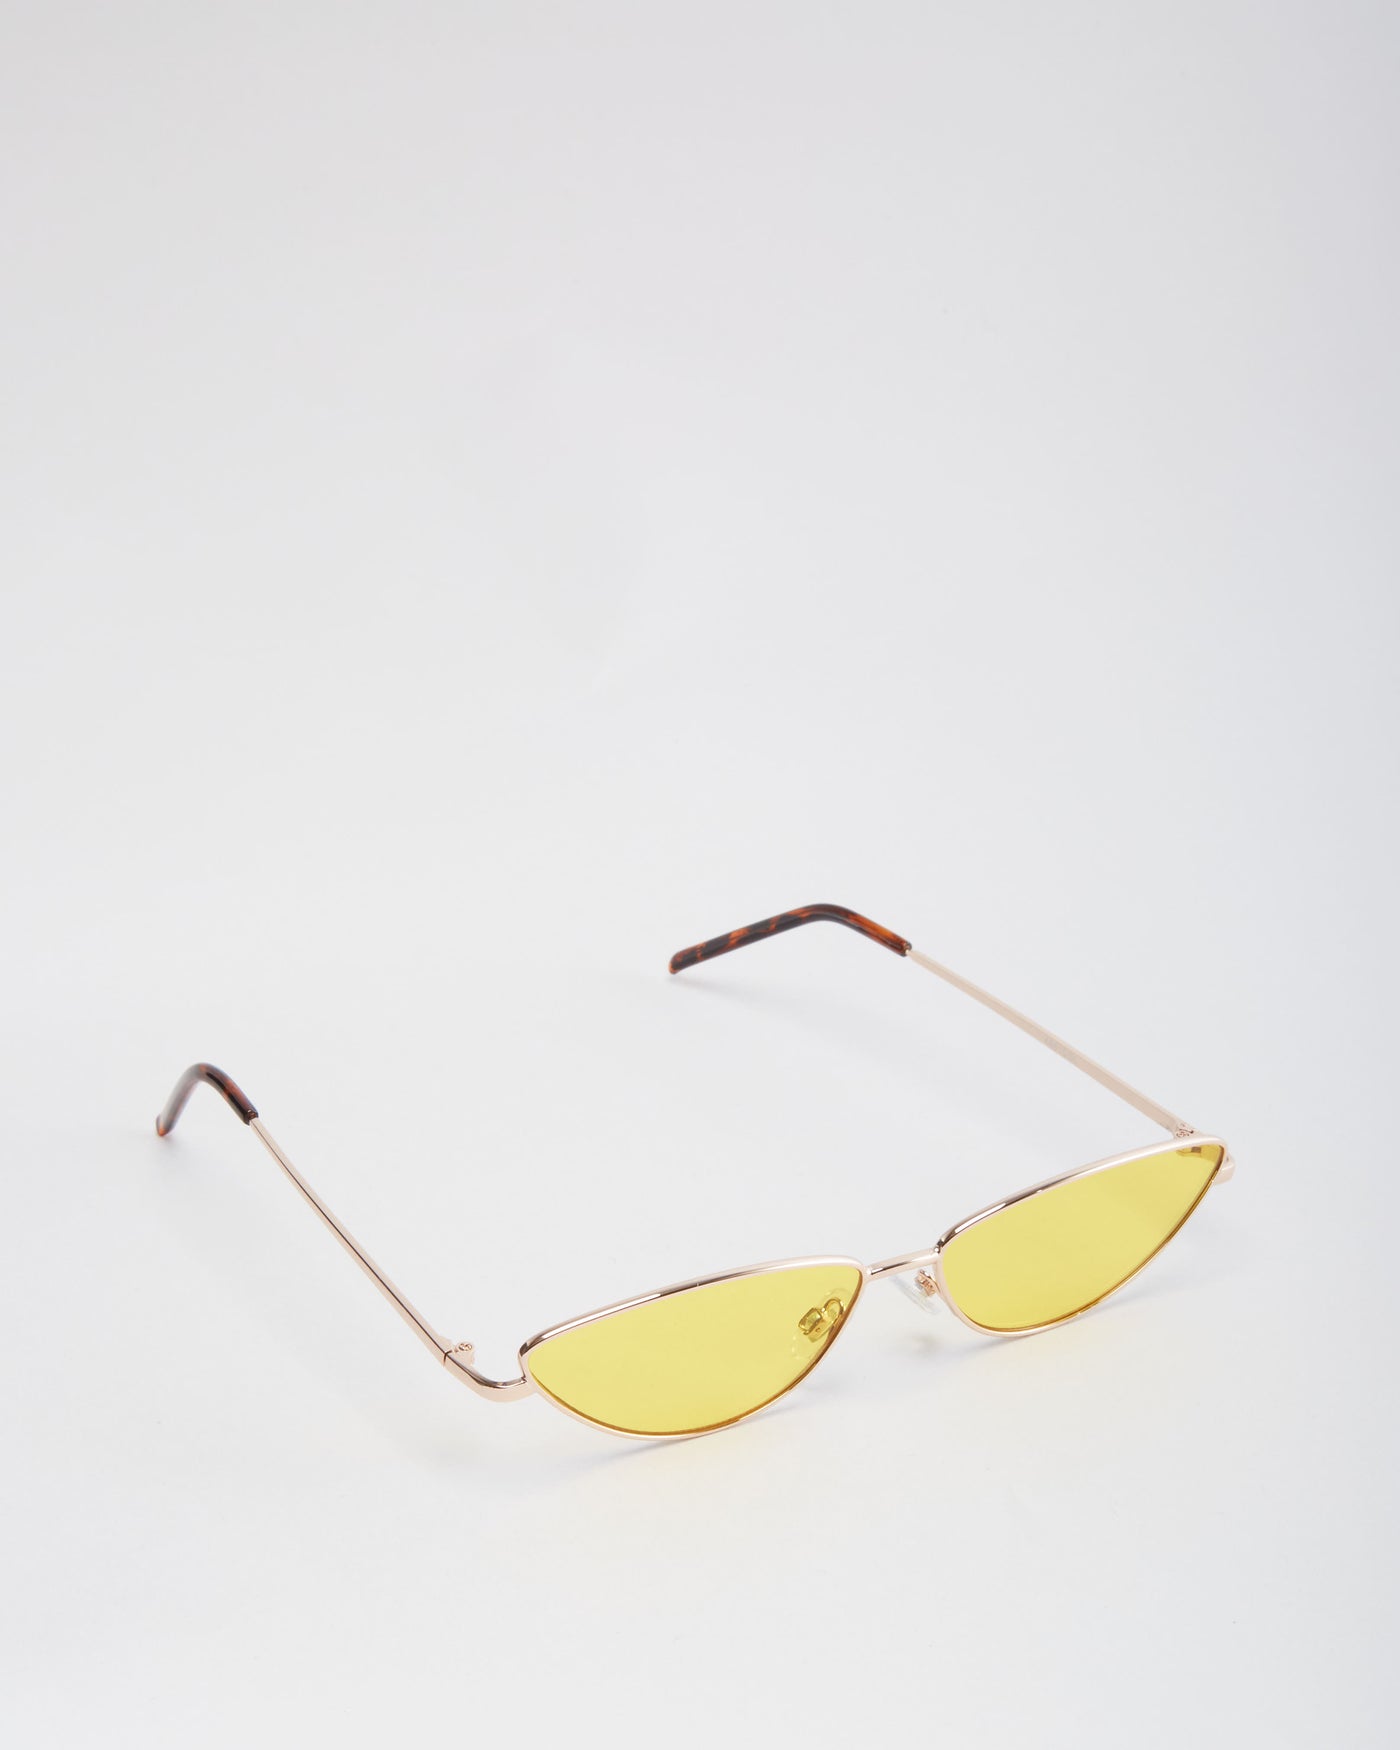 Tee Yellow Sunglasses